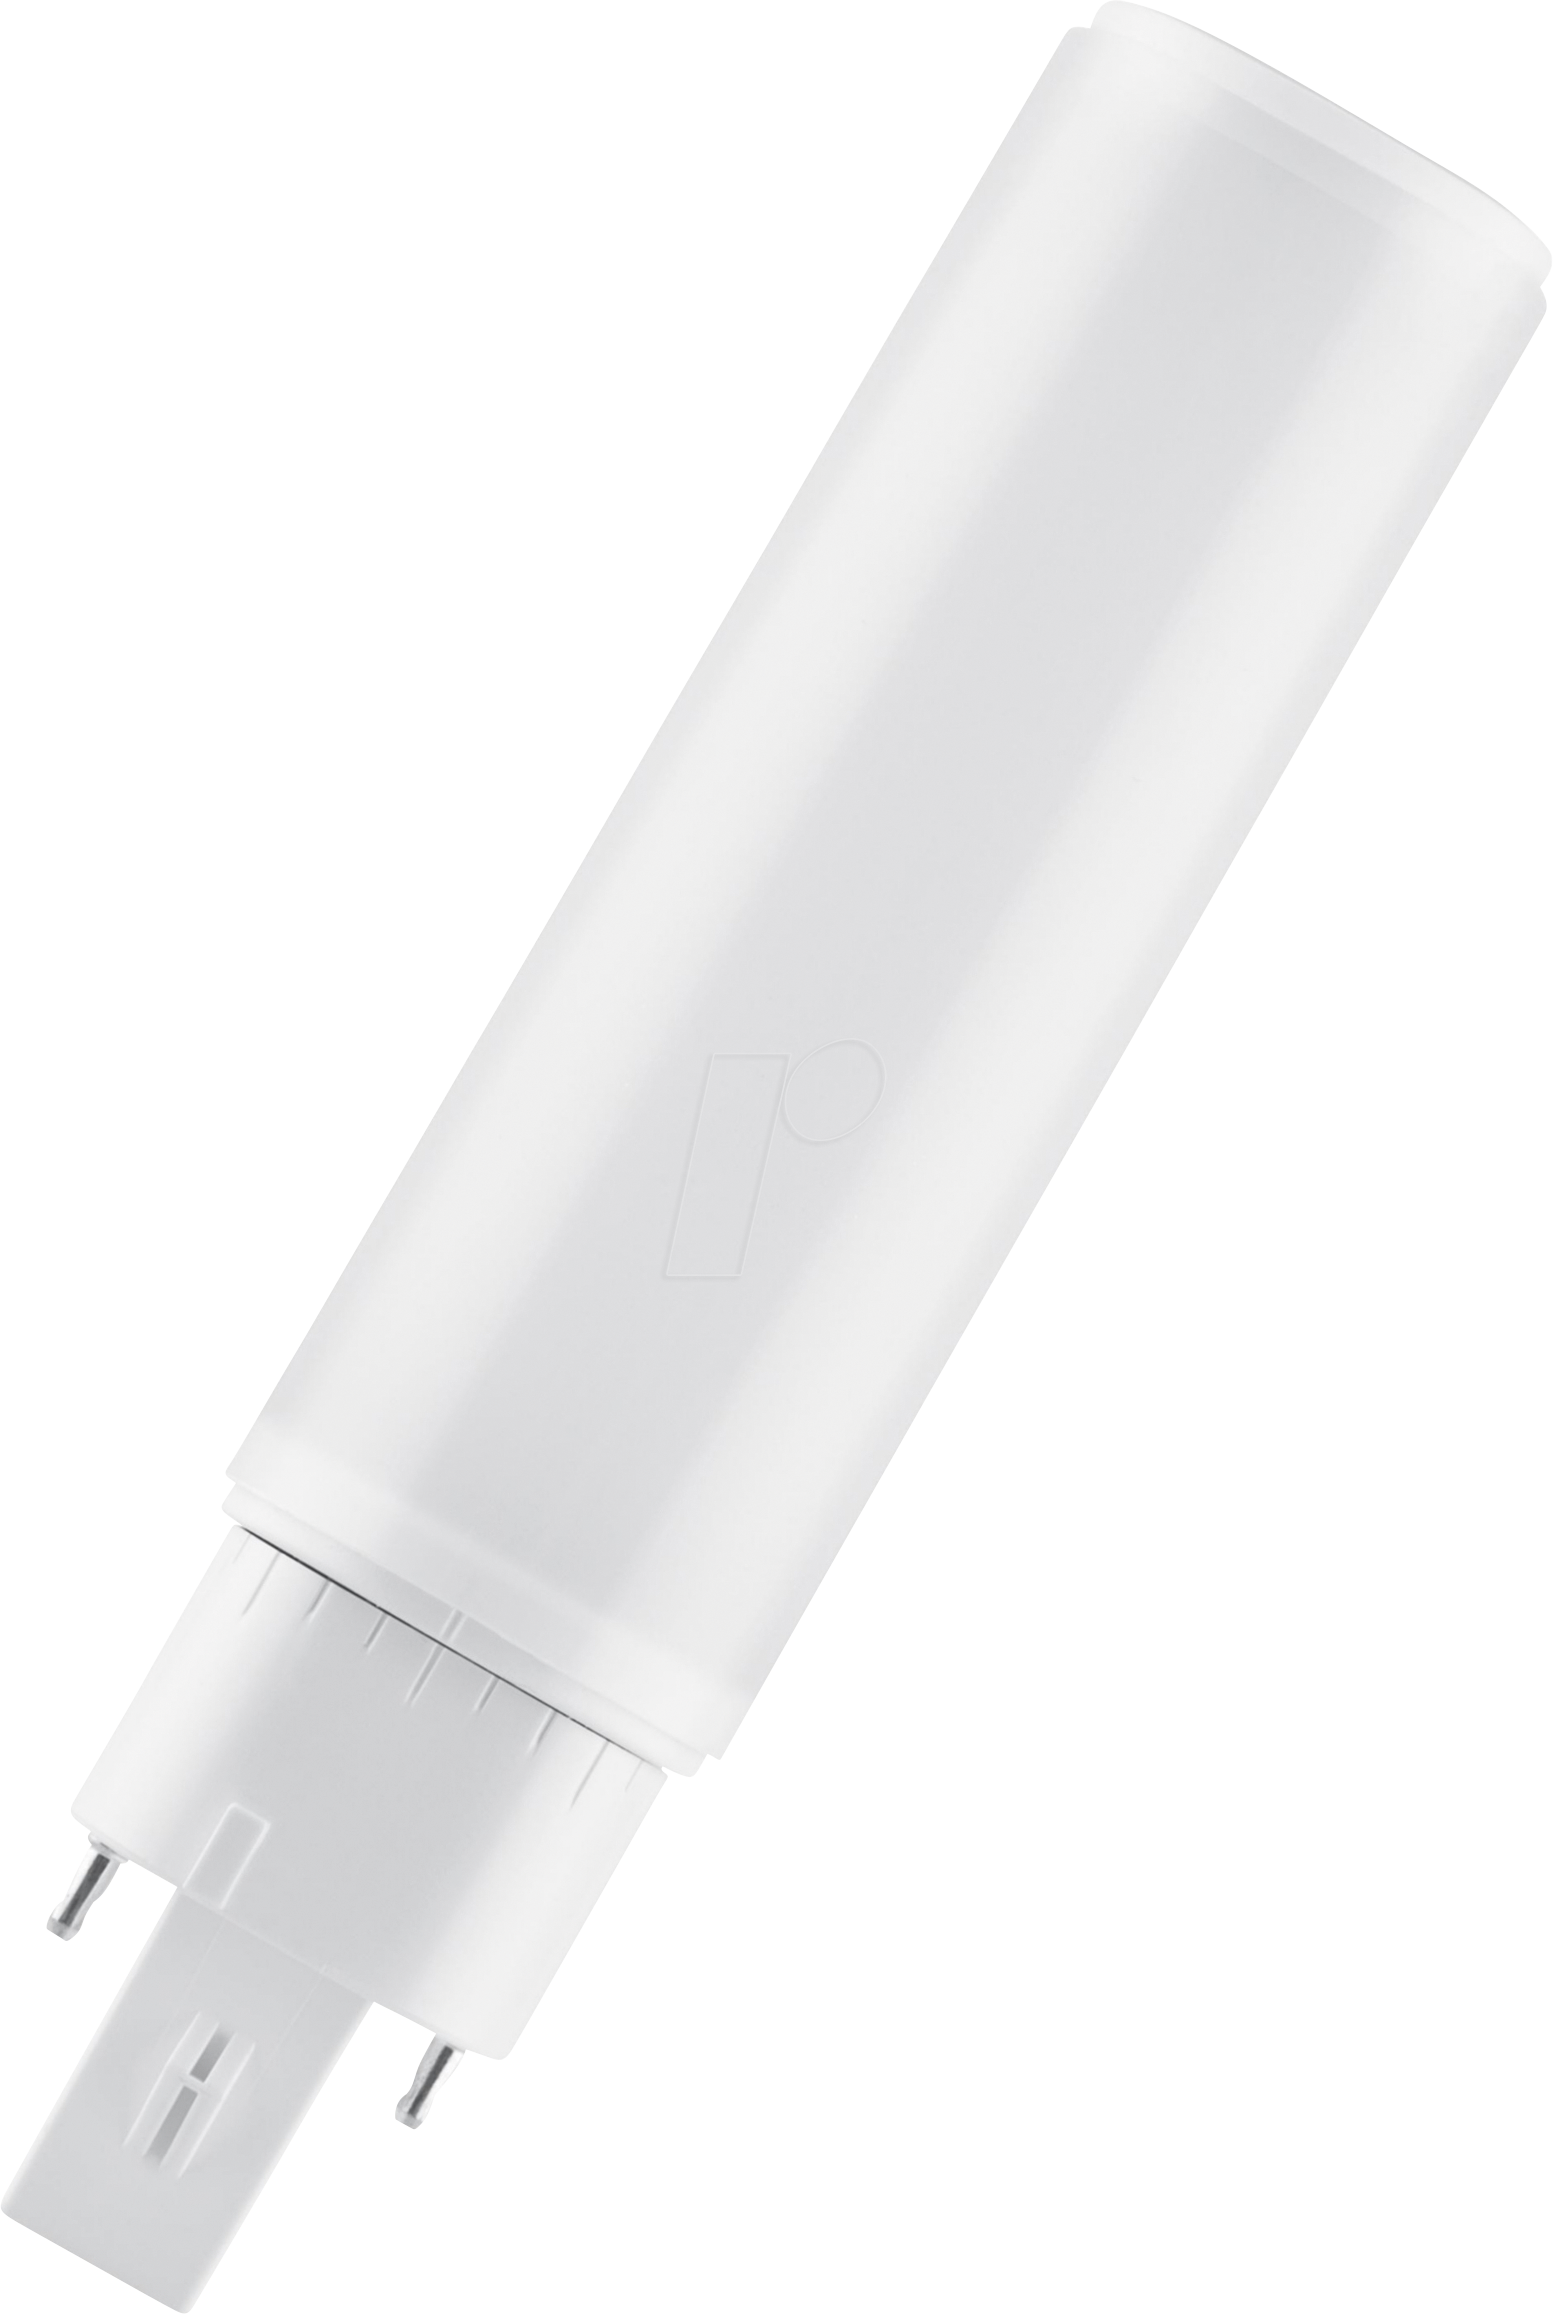 OSR 075558502 - LED-Röhrenlampe DULUX G24D-2, 7 W, 700 lm, 4000 K